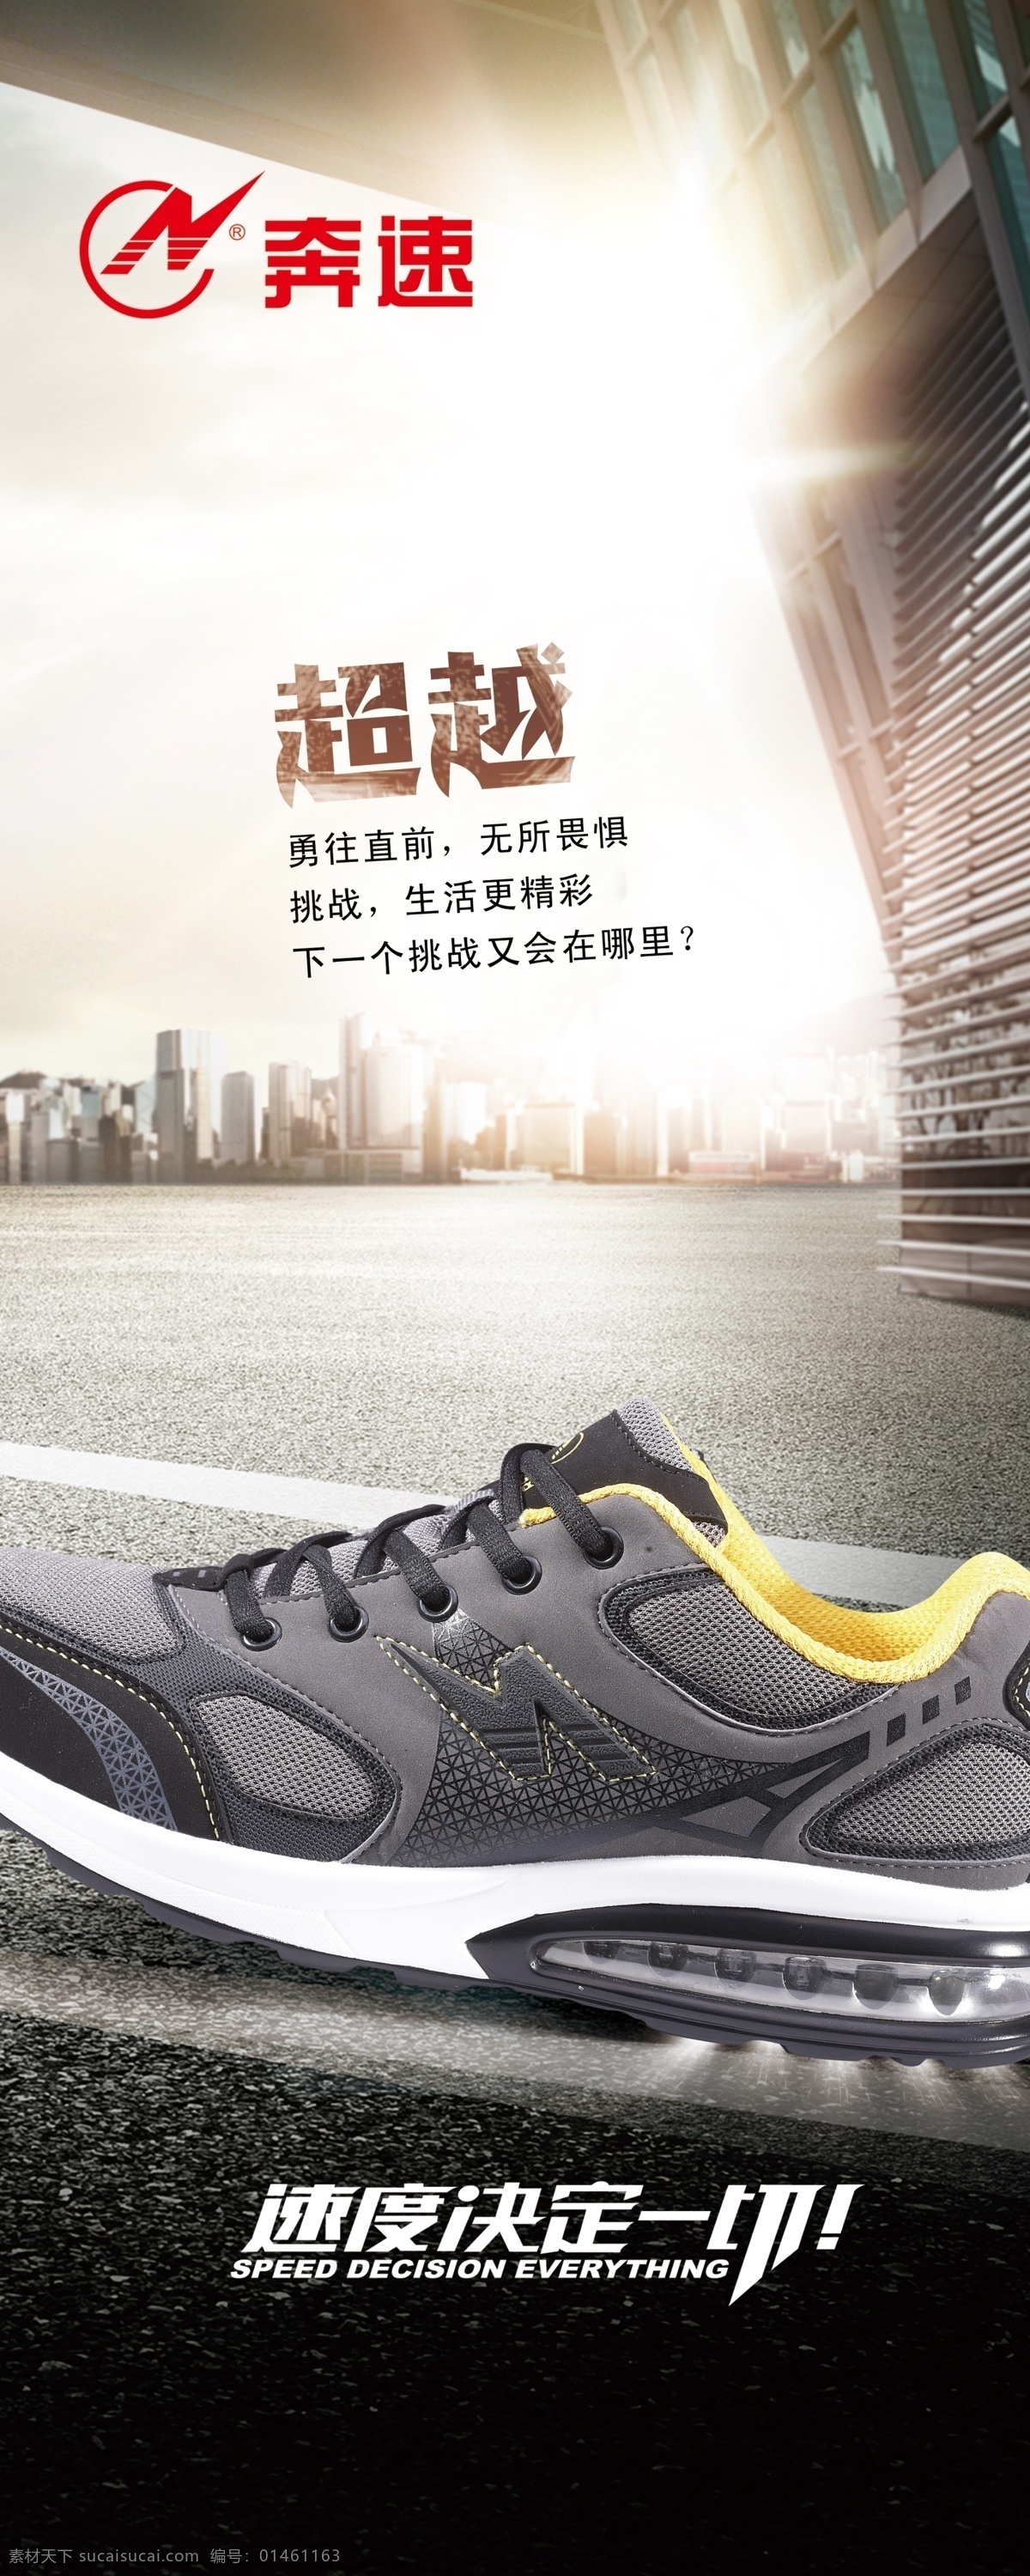 奔 速 运动鞋 展架 城市背景 展板模板 广告设计模板 源文件